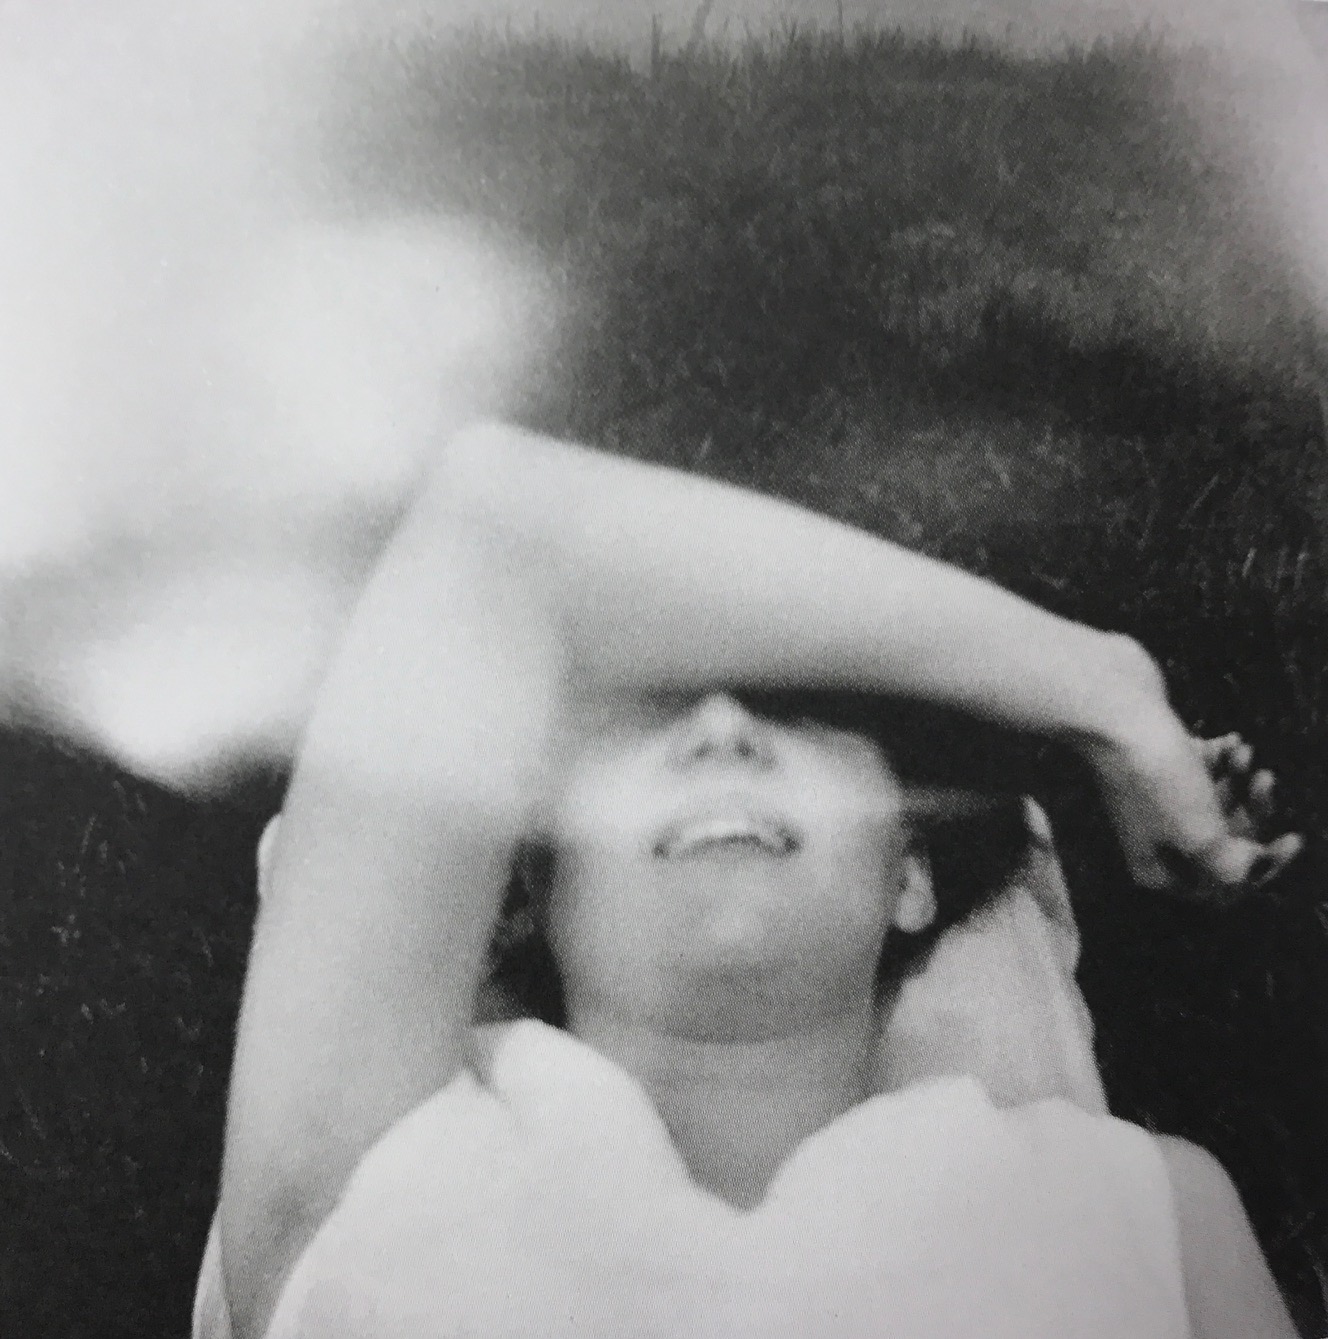 Mustavalkoisessa kuvassa nainen makaa nurmikolla selällään käsivarsi silmien päällä. Kuvan yläreunassa on vaaleita sumuisia kohtia. 